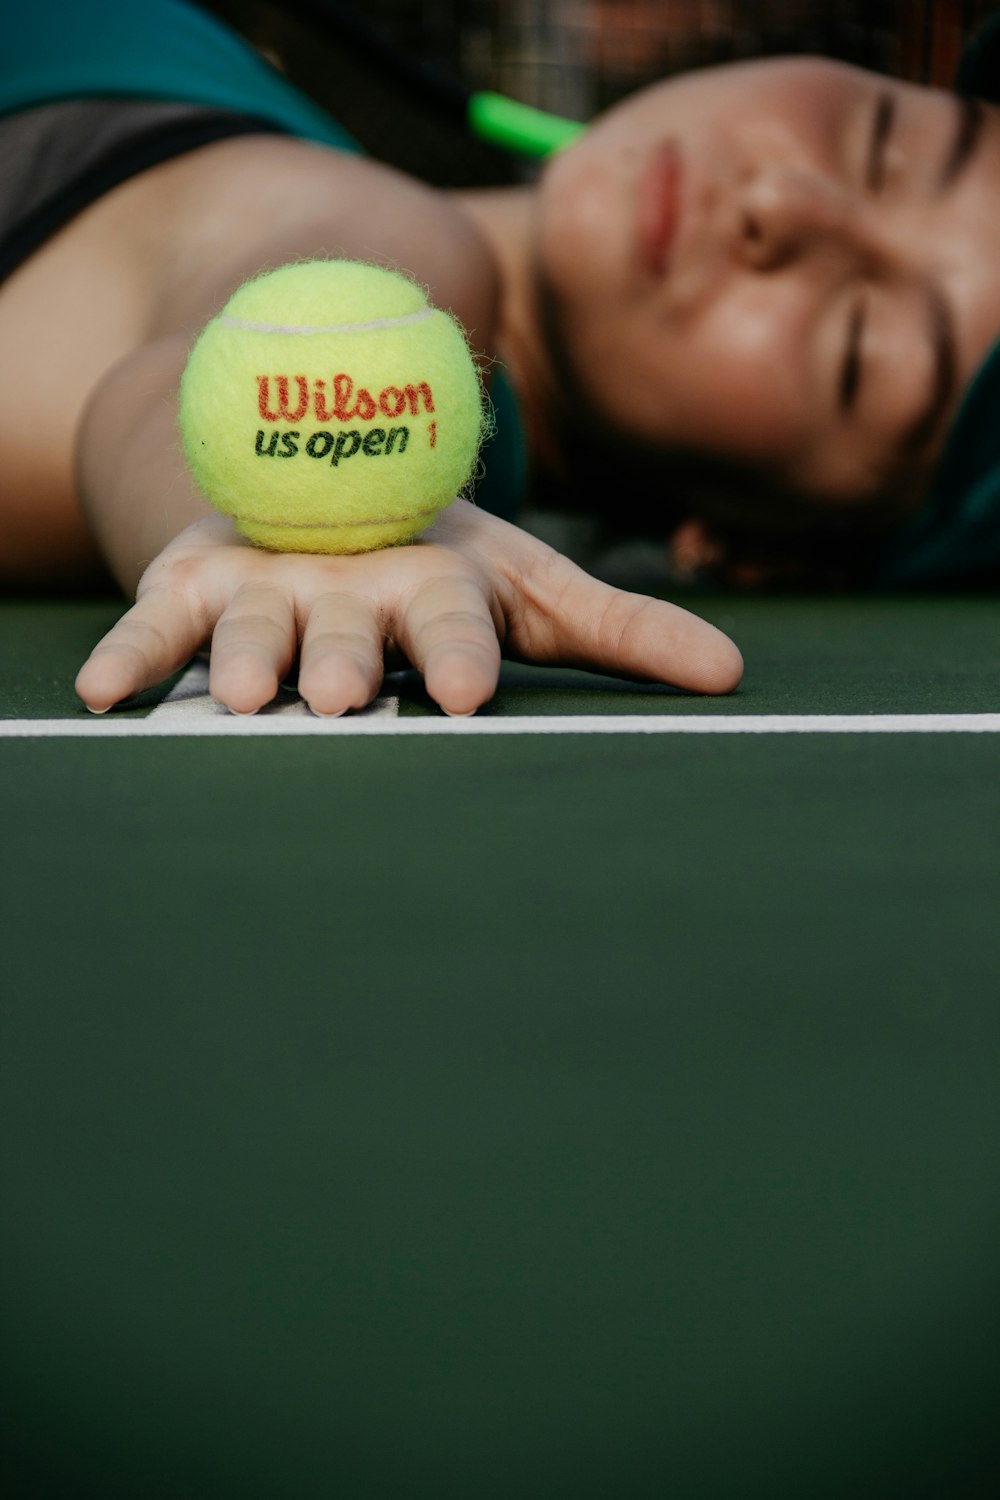 테니스 코트에 누워 녹색 윌슨 공을 들고 있는 여자